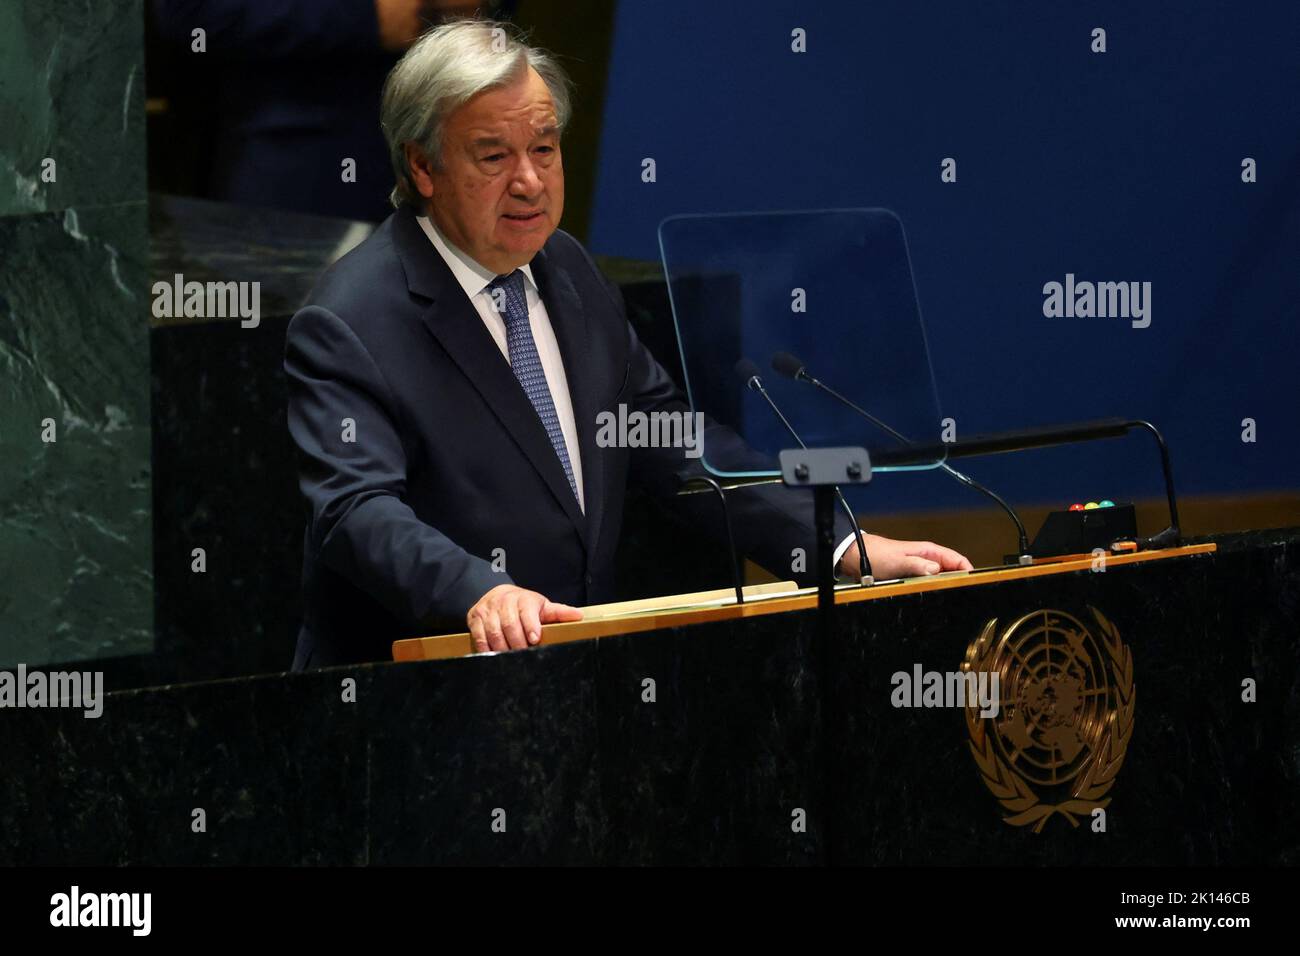 El Secretario General de las Naciones Unidas Antonio Guterres habla mientras la Asamblea General de las Naciones Unidas se reúne durante una sesión especial para rendir homenaje a la Reina Isabel II de Gran Bretaña en la sede de la ONU en Nueva York, EE.UU., el 15 de septiembre de 2022. REUTERS/Mike Segar Foto de stock